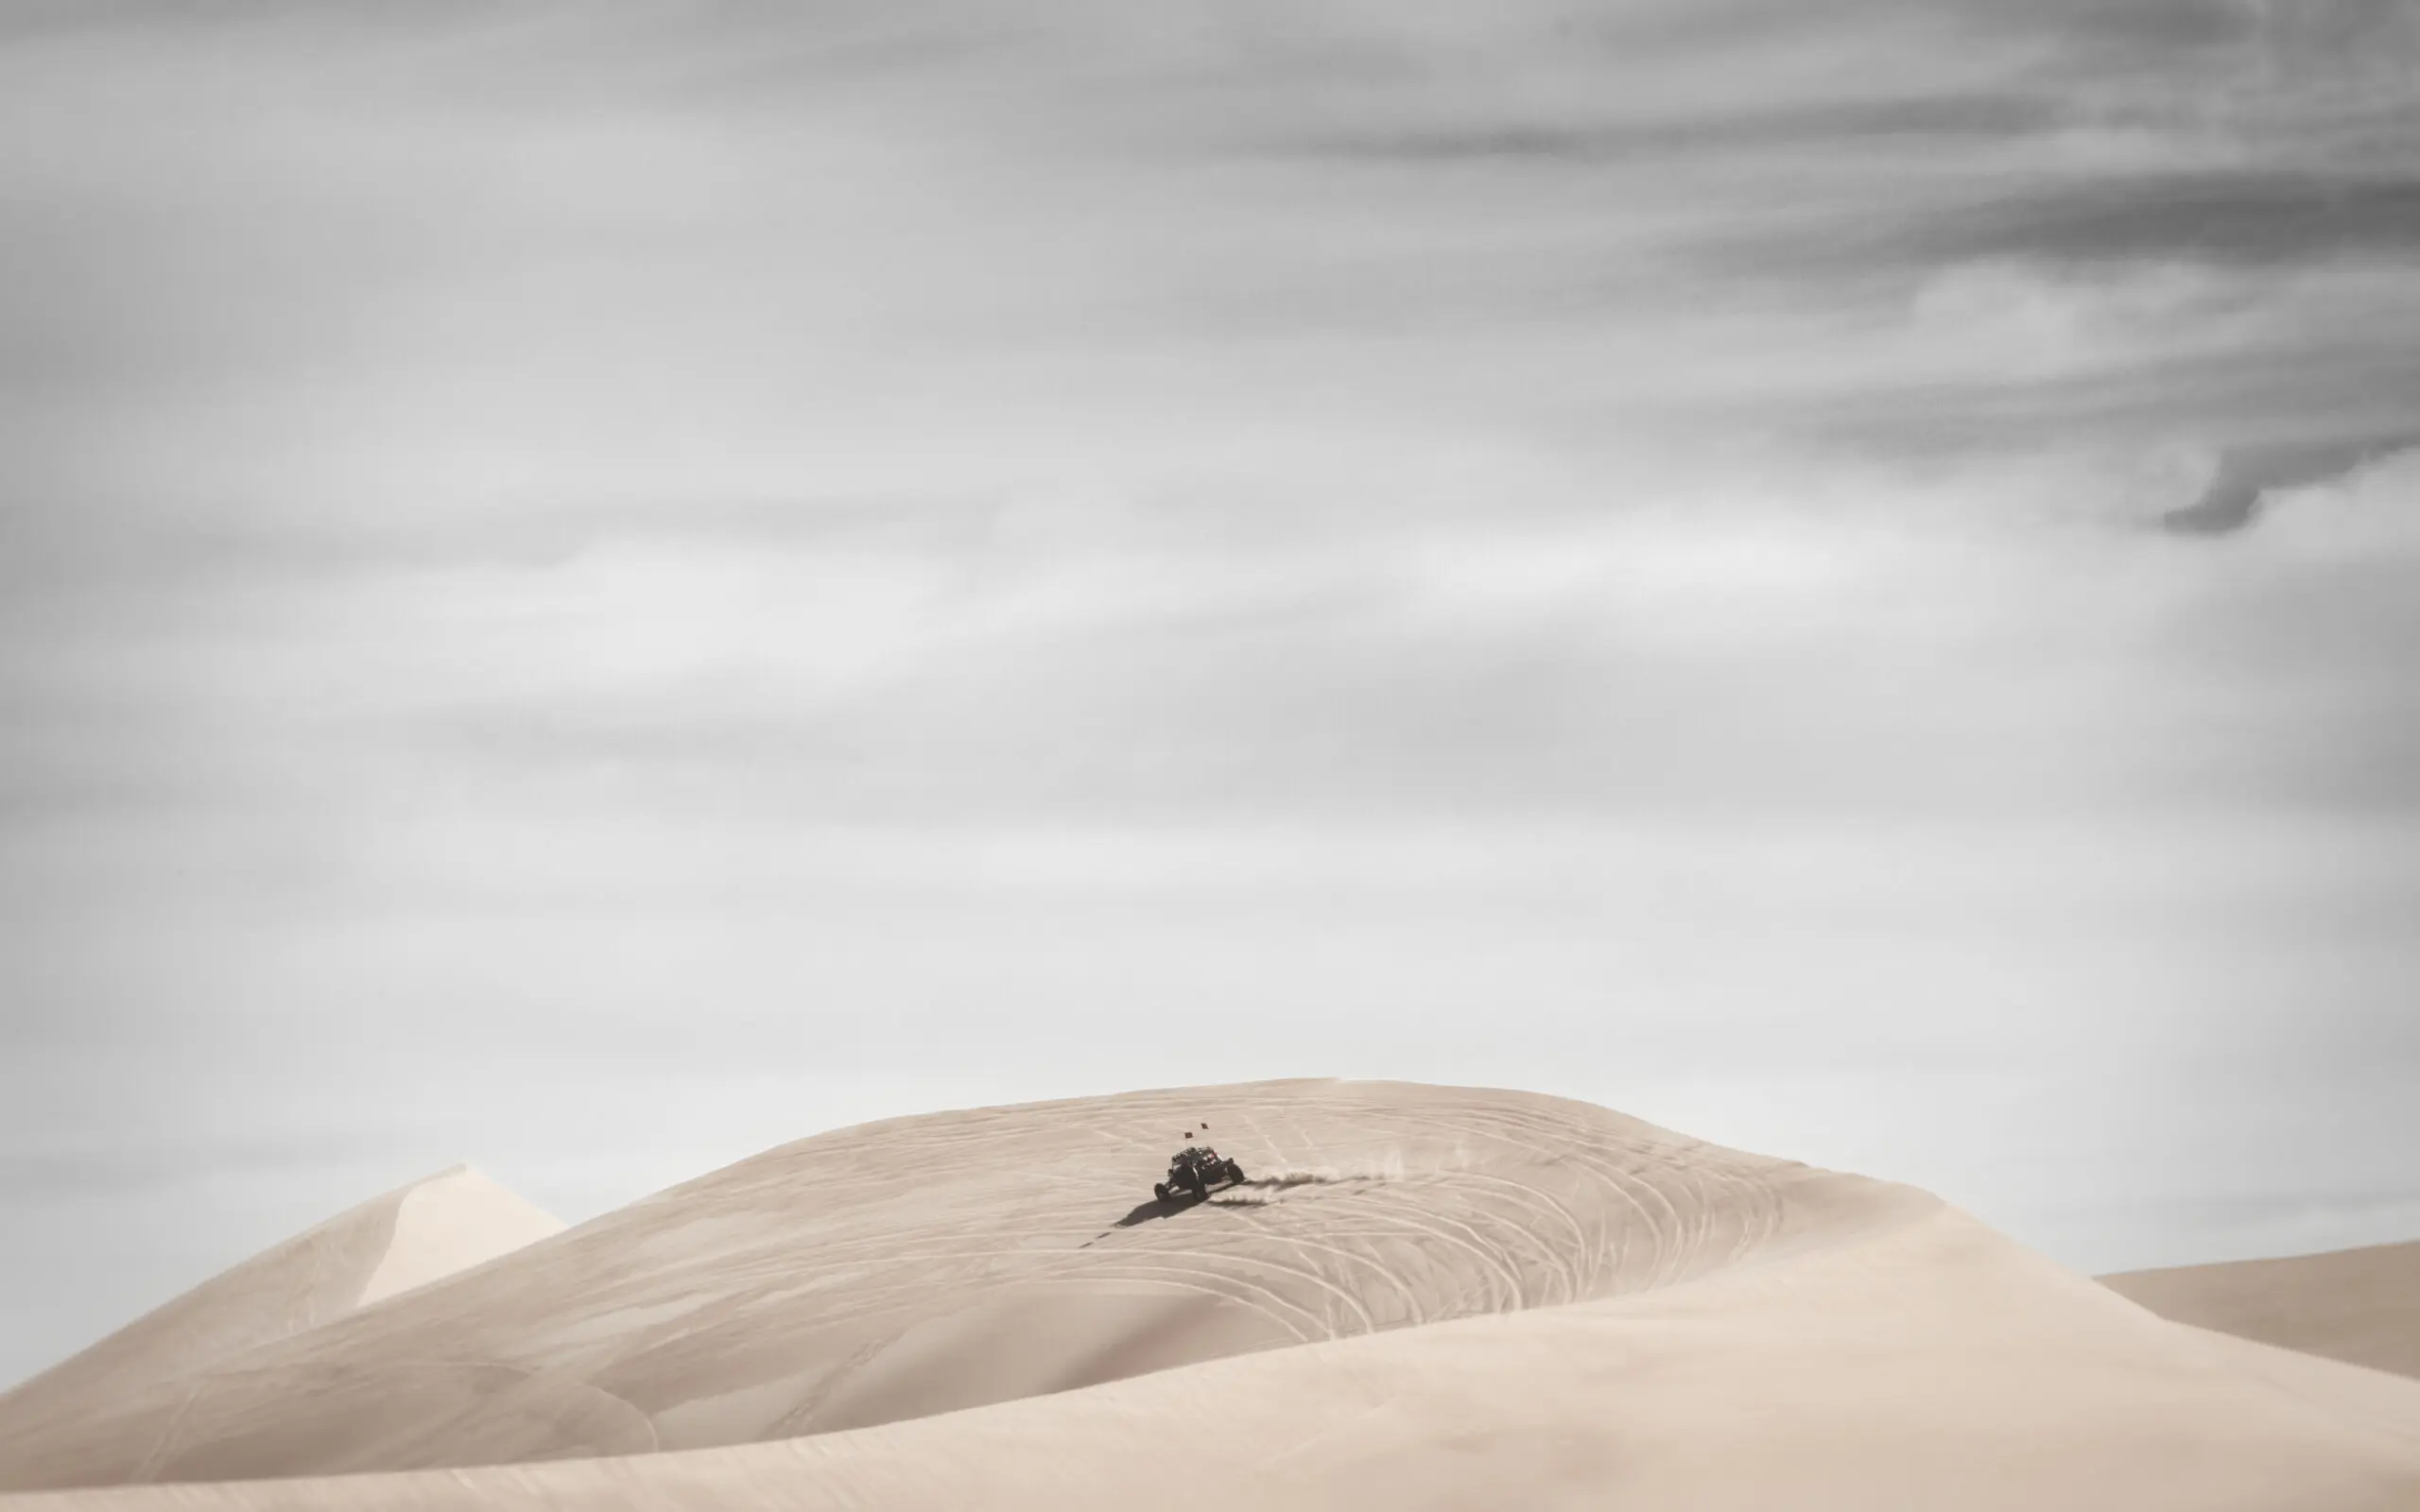 Wandbild (3989) Big Sand Dune Buggy präsentiert: Aktion-Bewegung,Technik,Motorsport